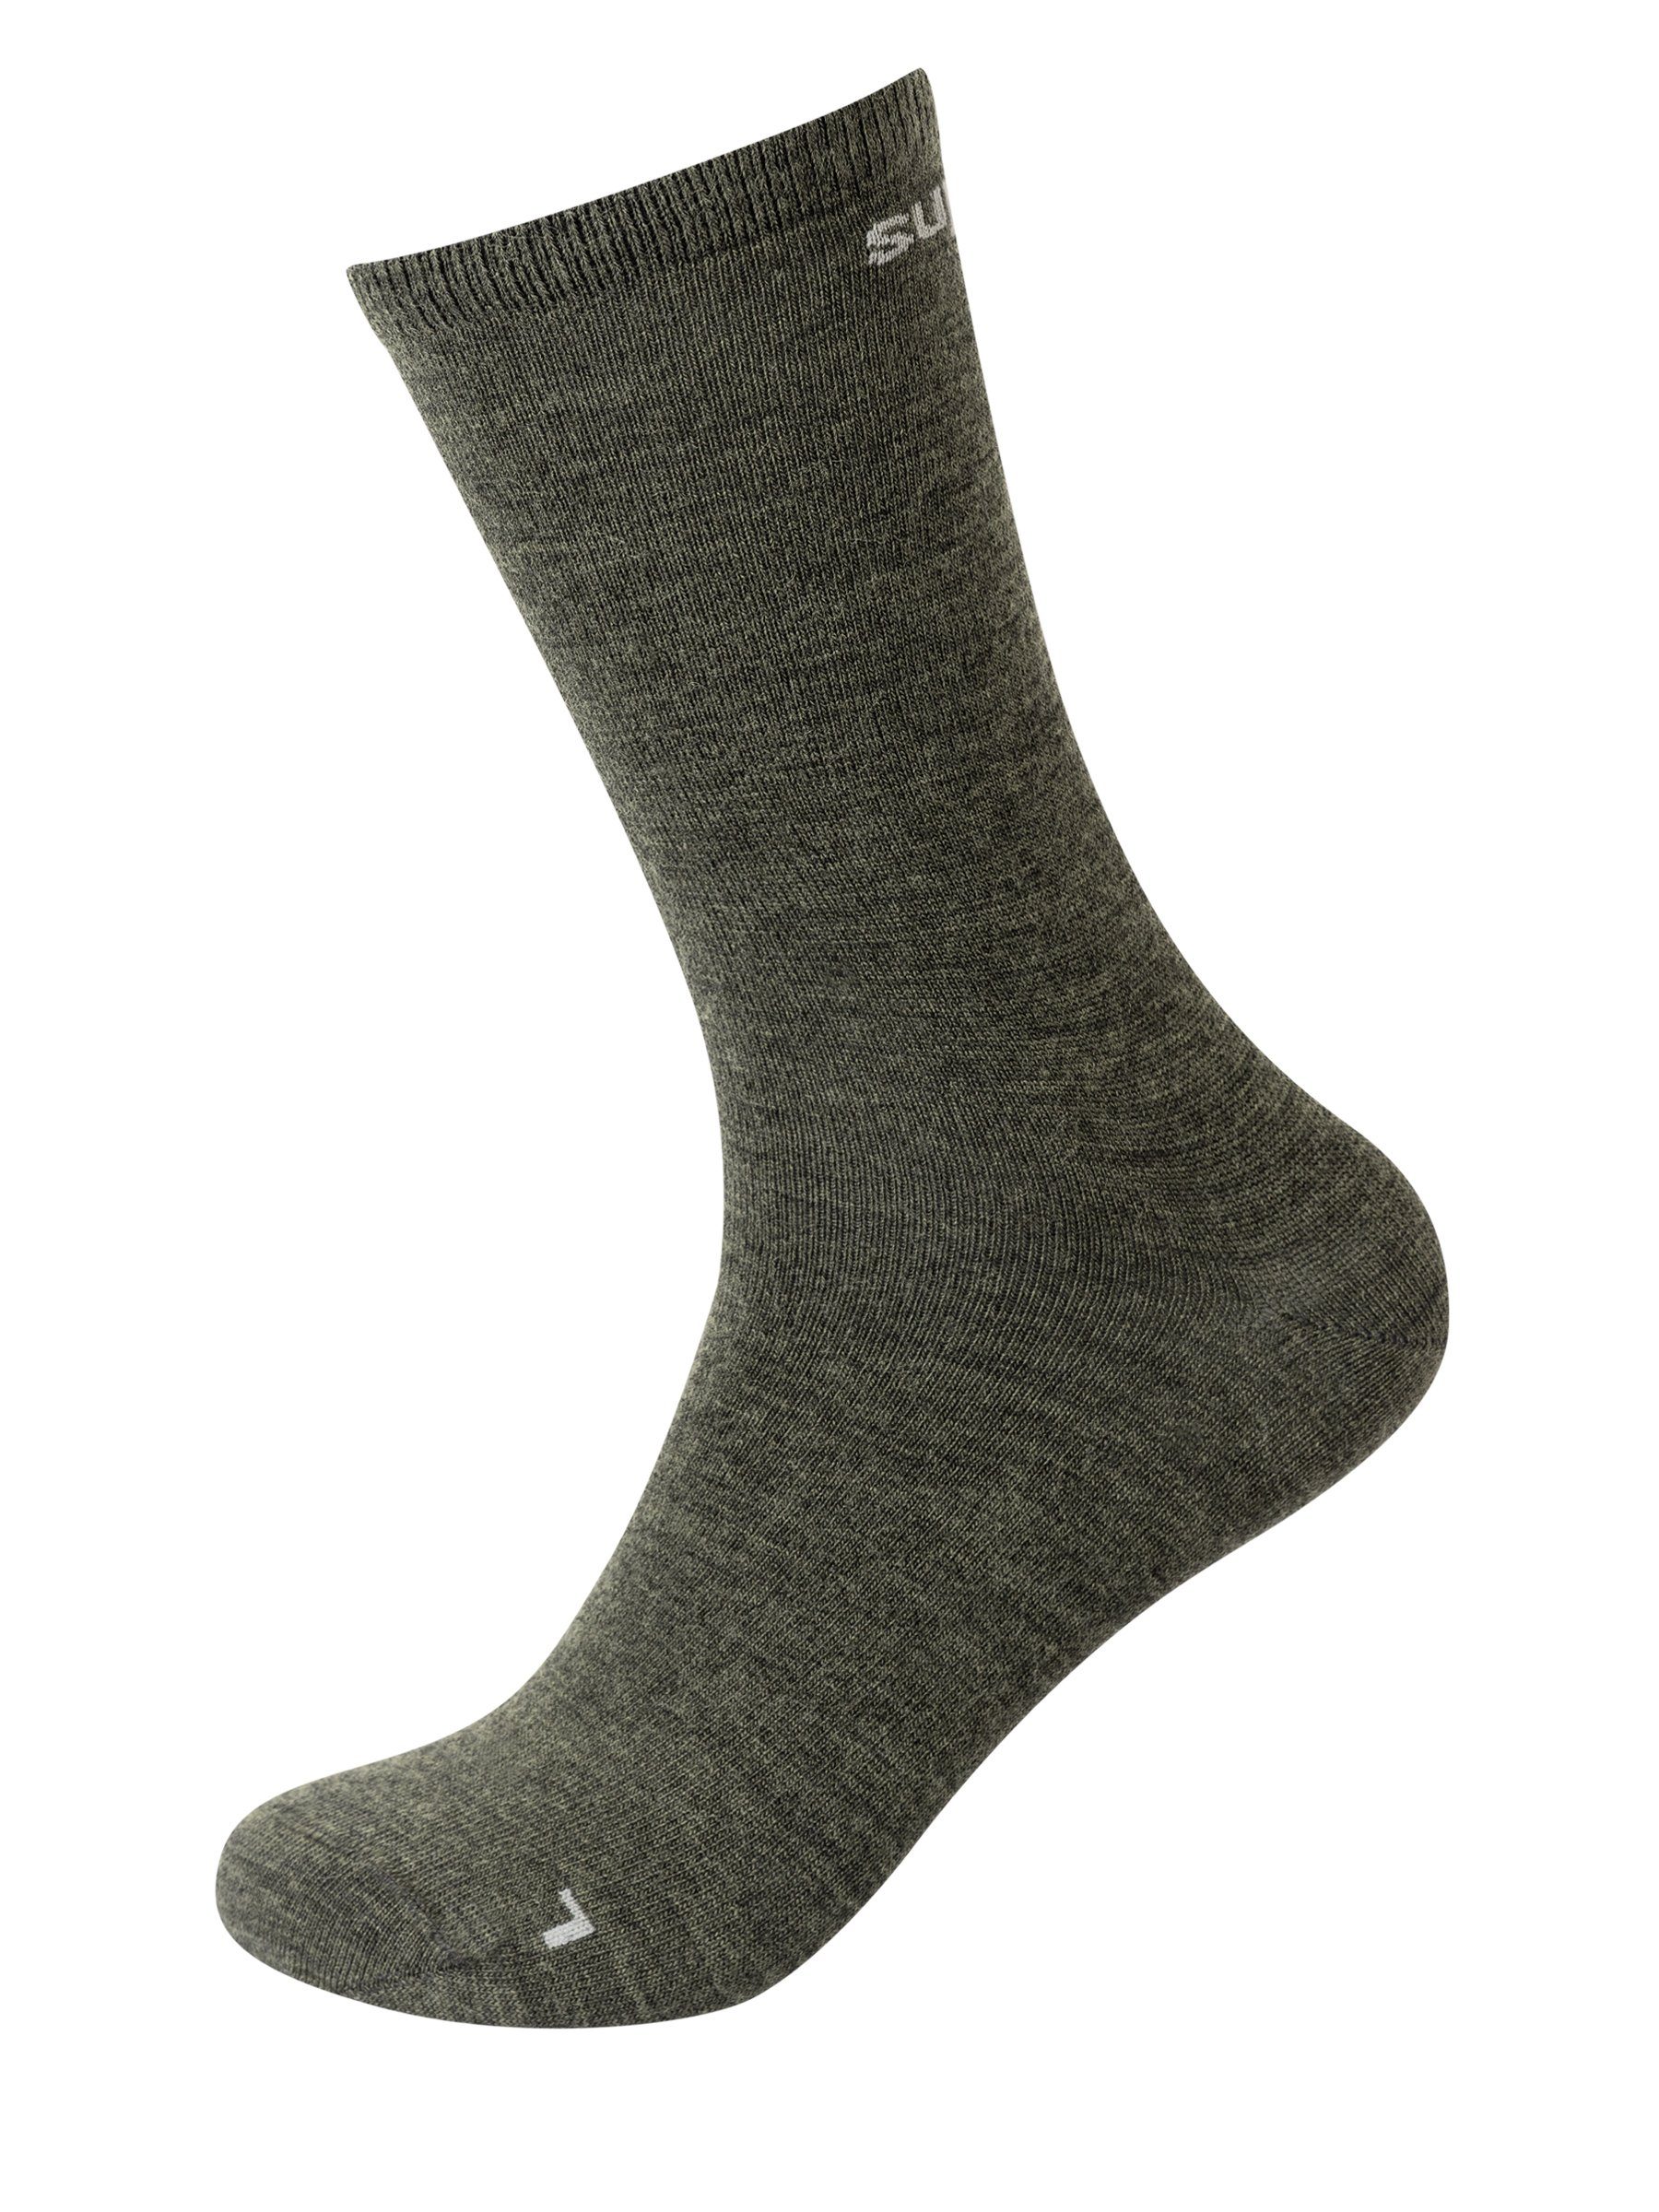 SUPER.NATURAL Sportsocken Merino Socken SN ALL DAY SOCKS (2-Paar) No smell-no worries, Merino-Materialmix Olive Night/Jet Black